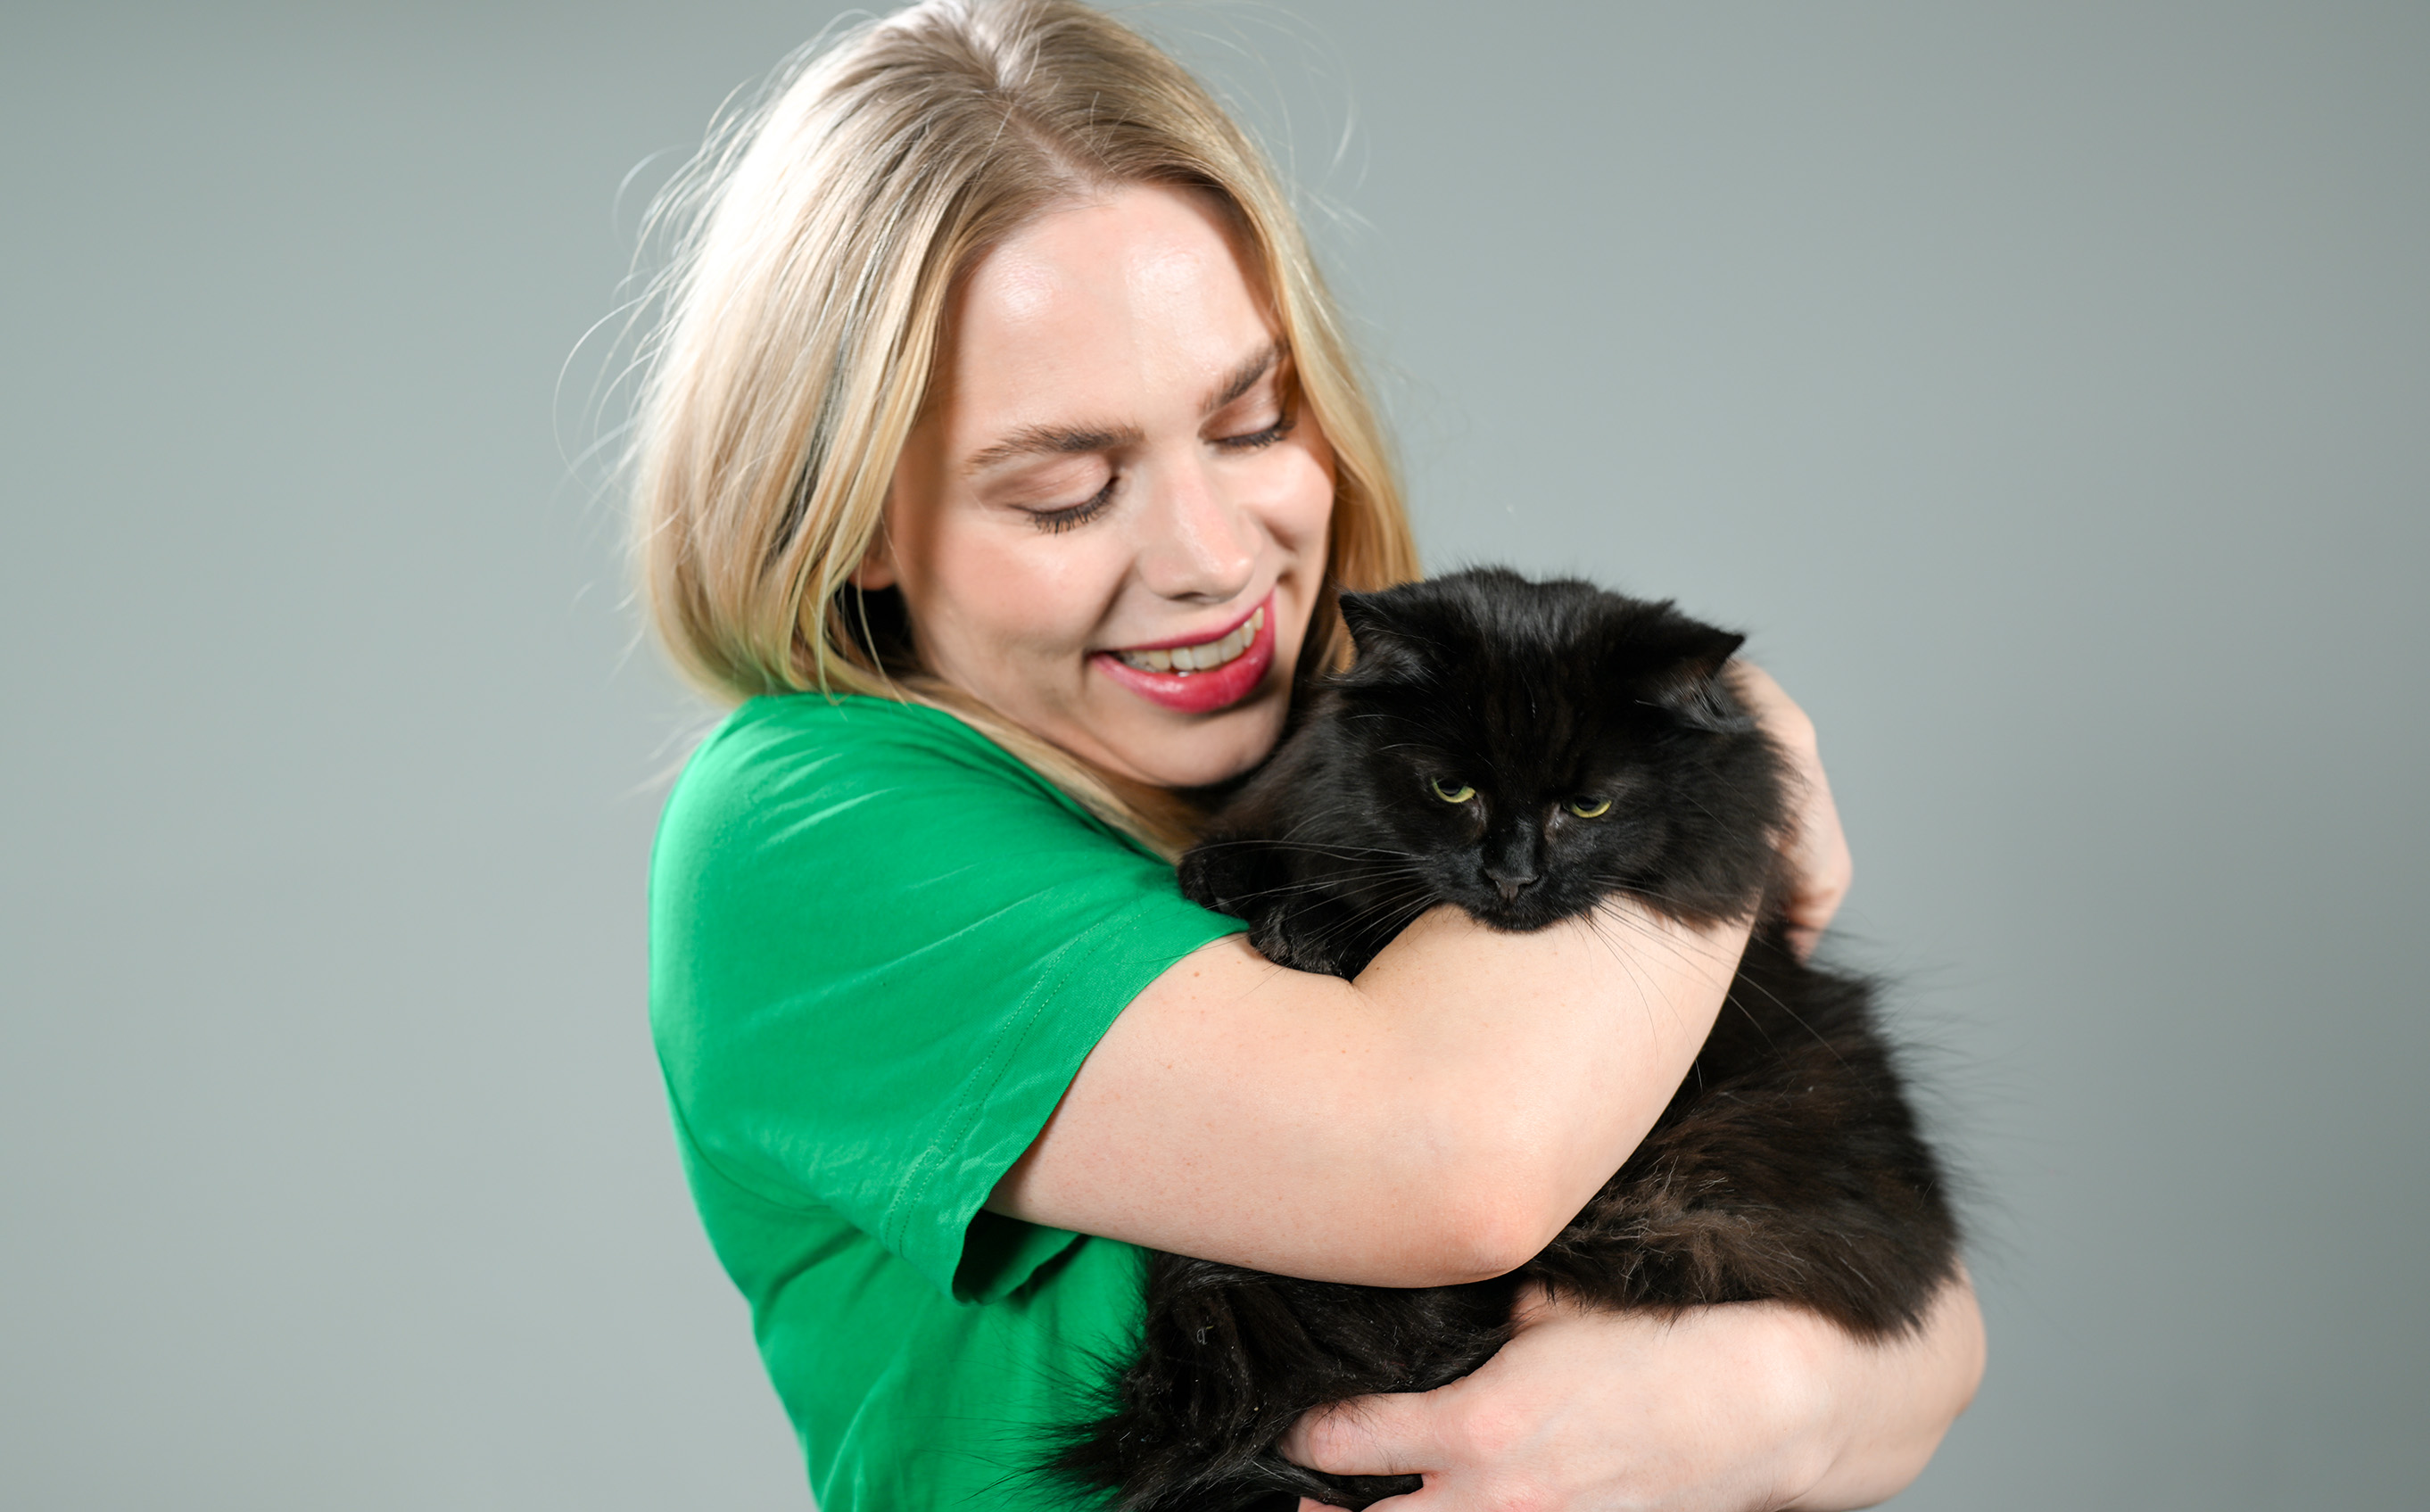 Kvinne i grønn t-skjorte som holder en svart langhåret katt